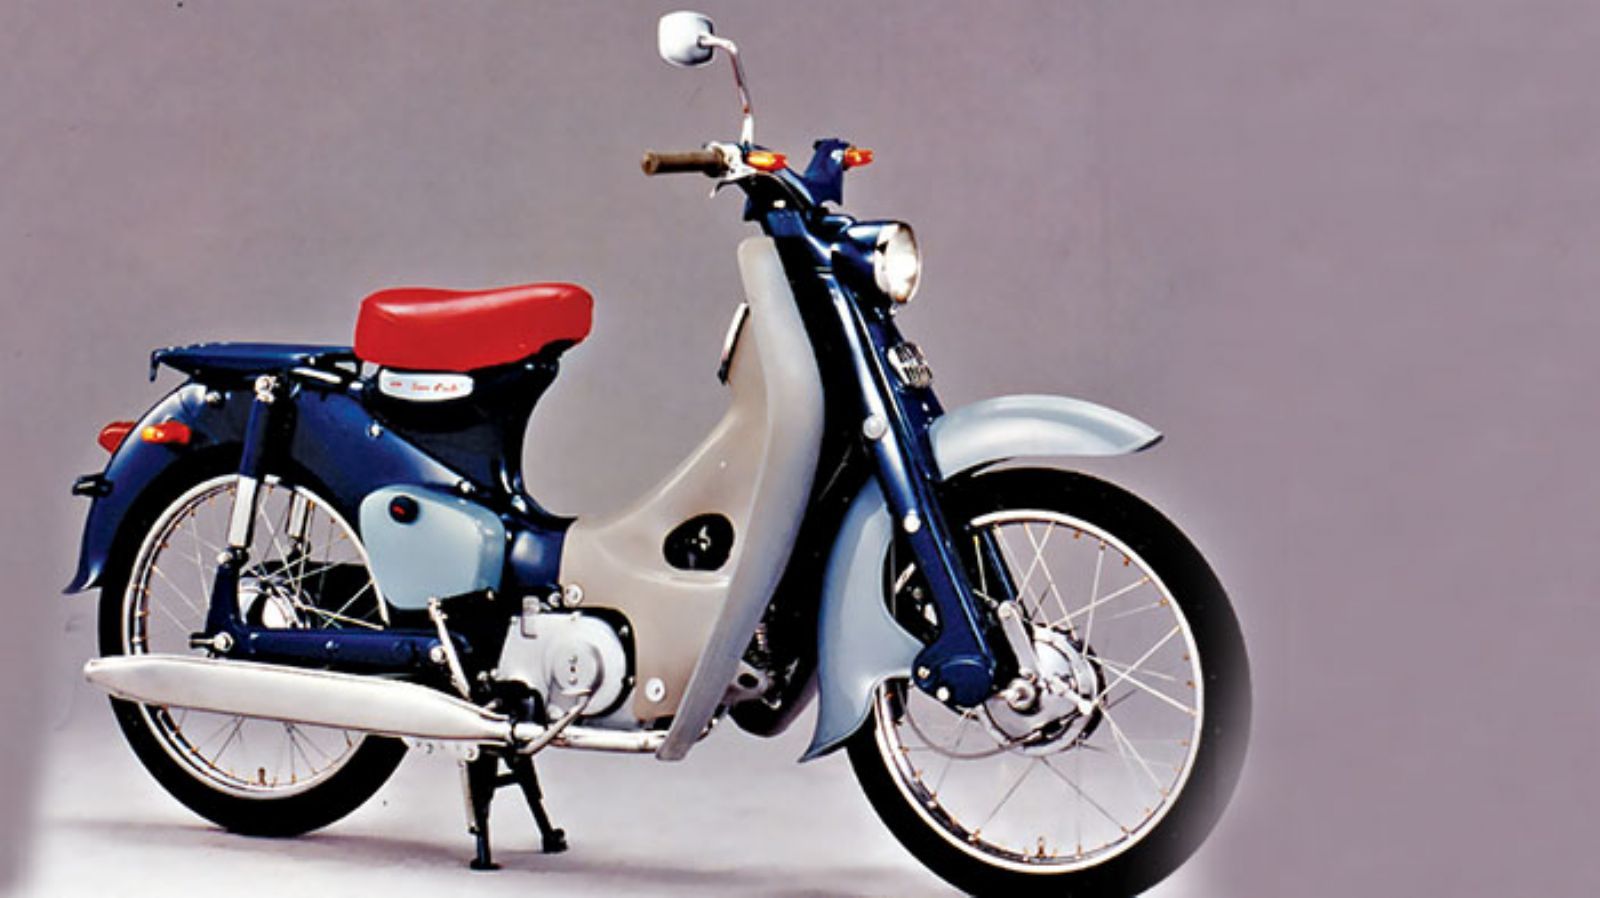 Honda Super Cub 50 - honda c